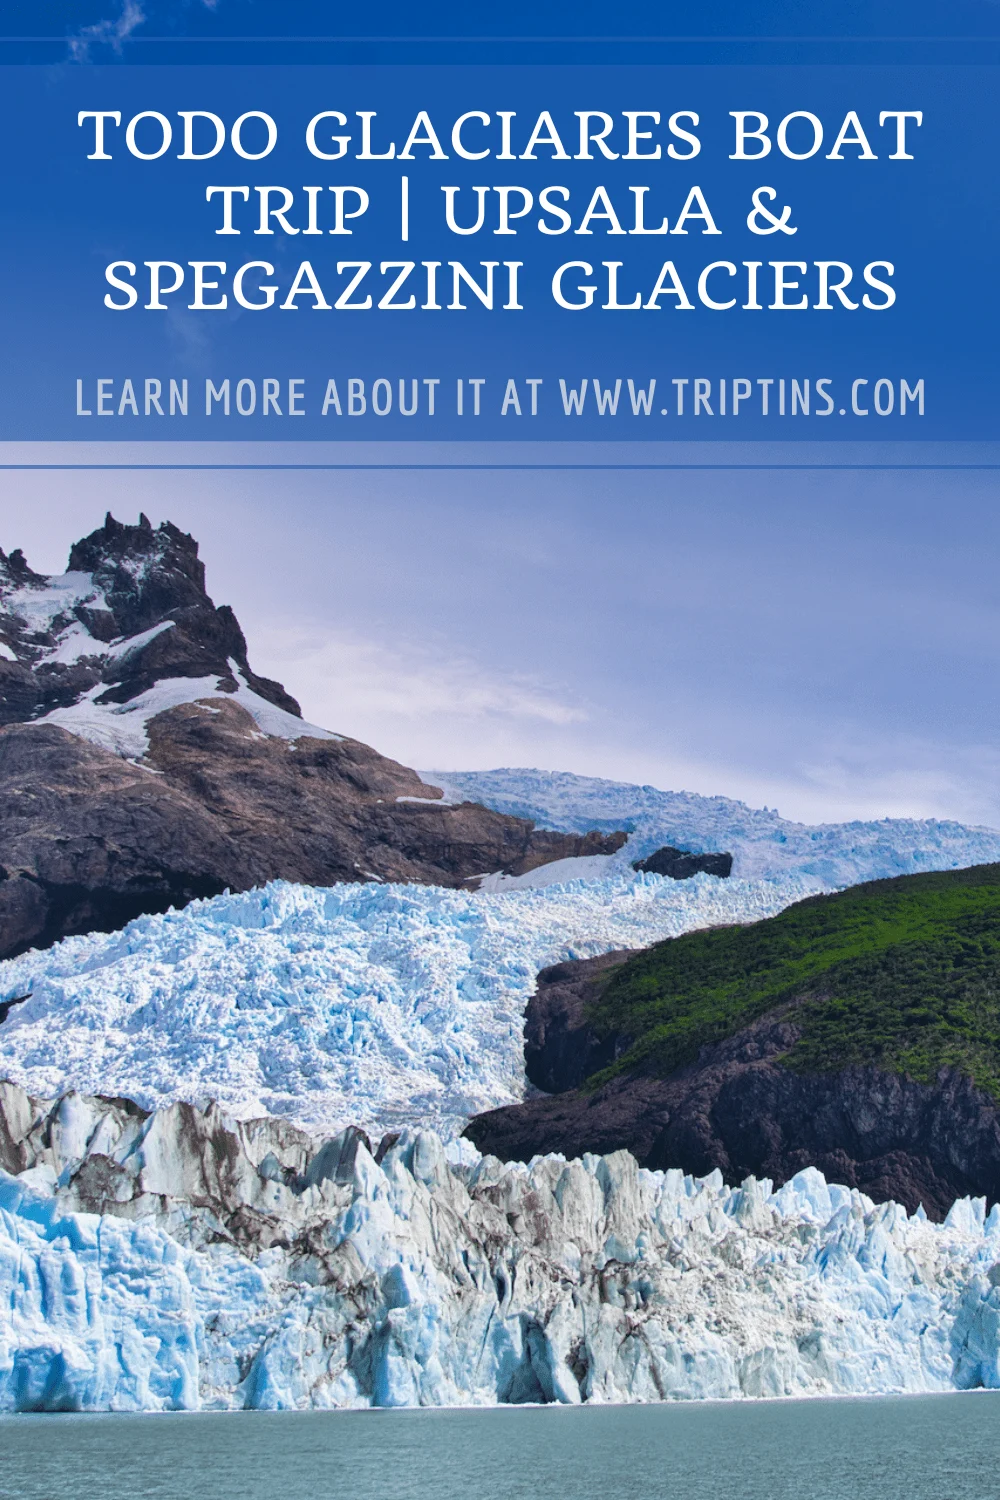 Upsala and Spegazzini Glaciers